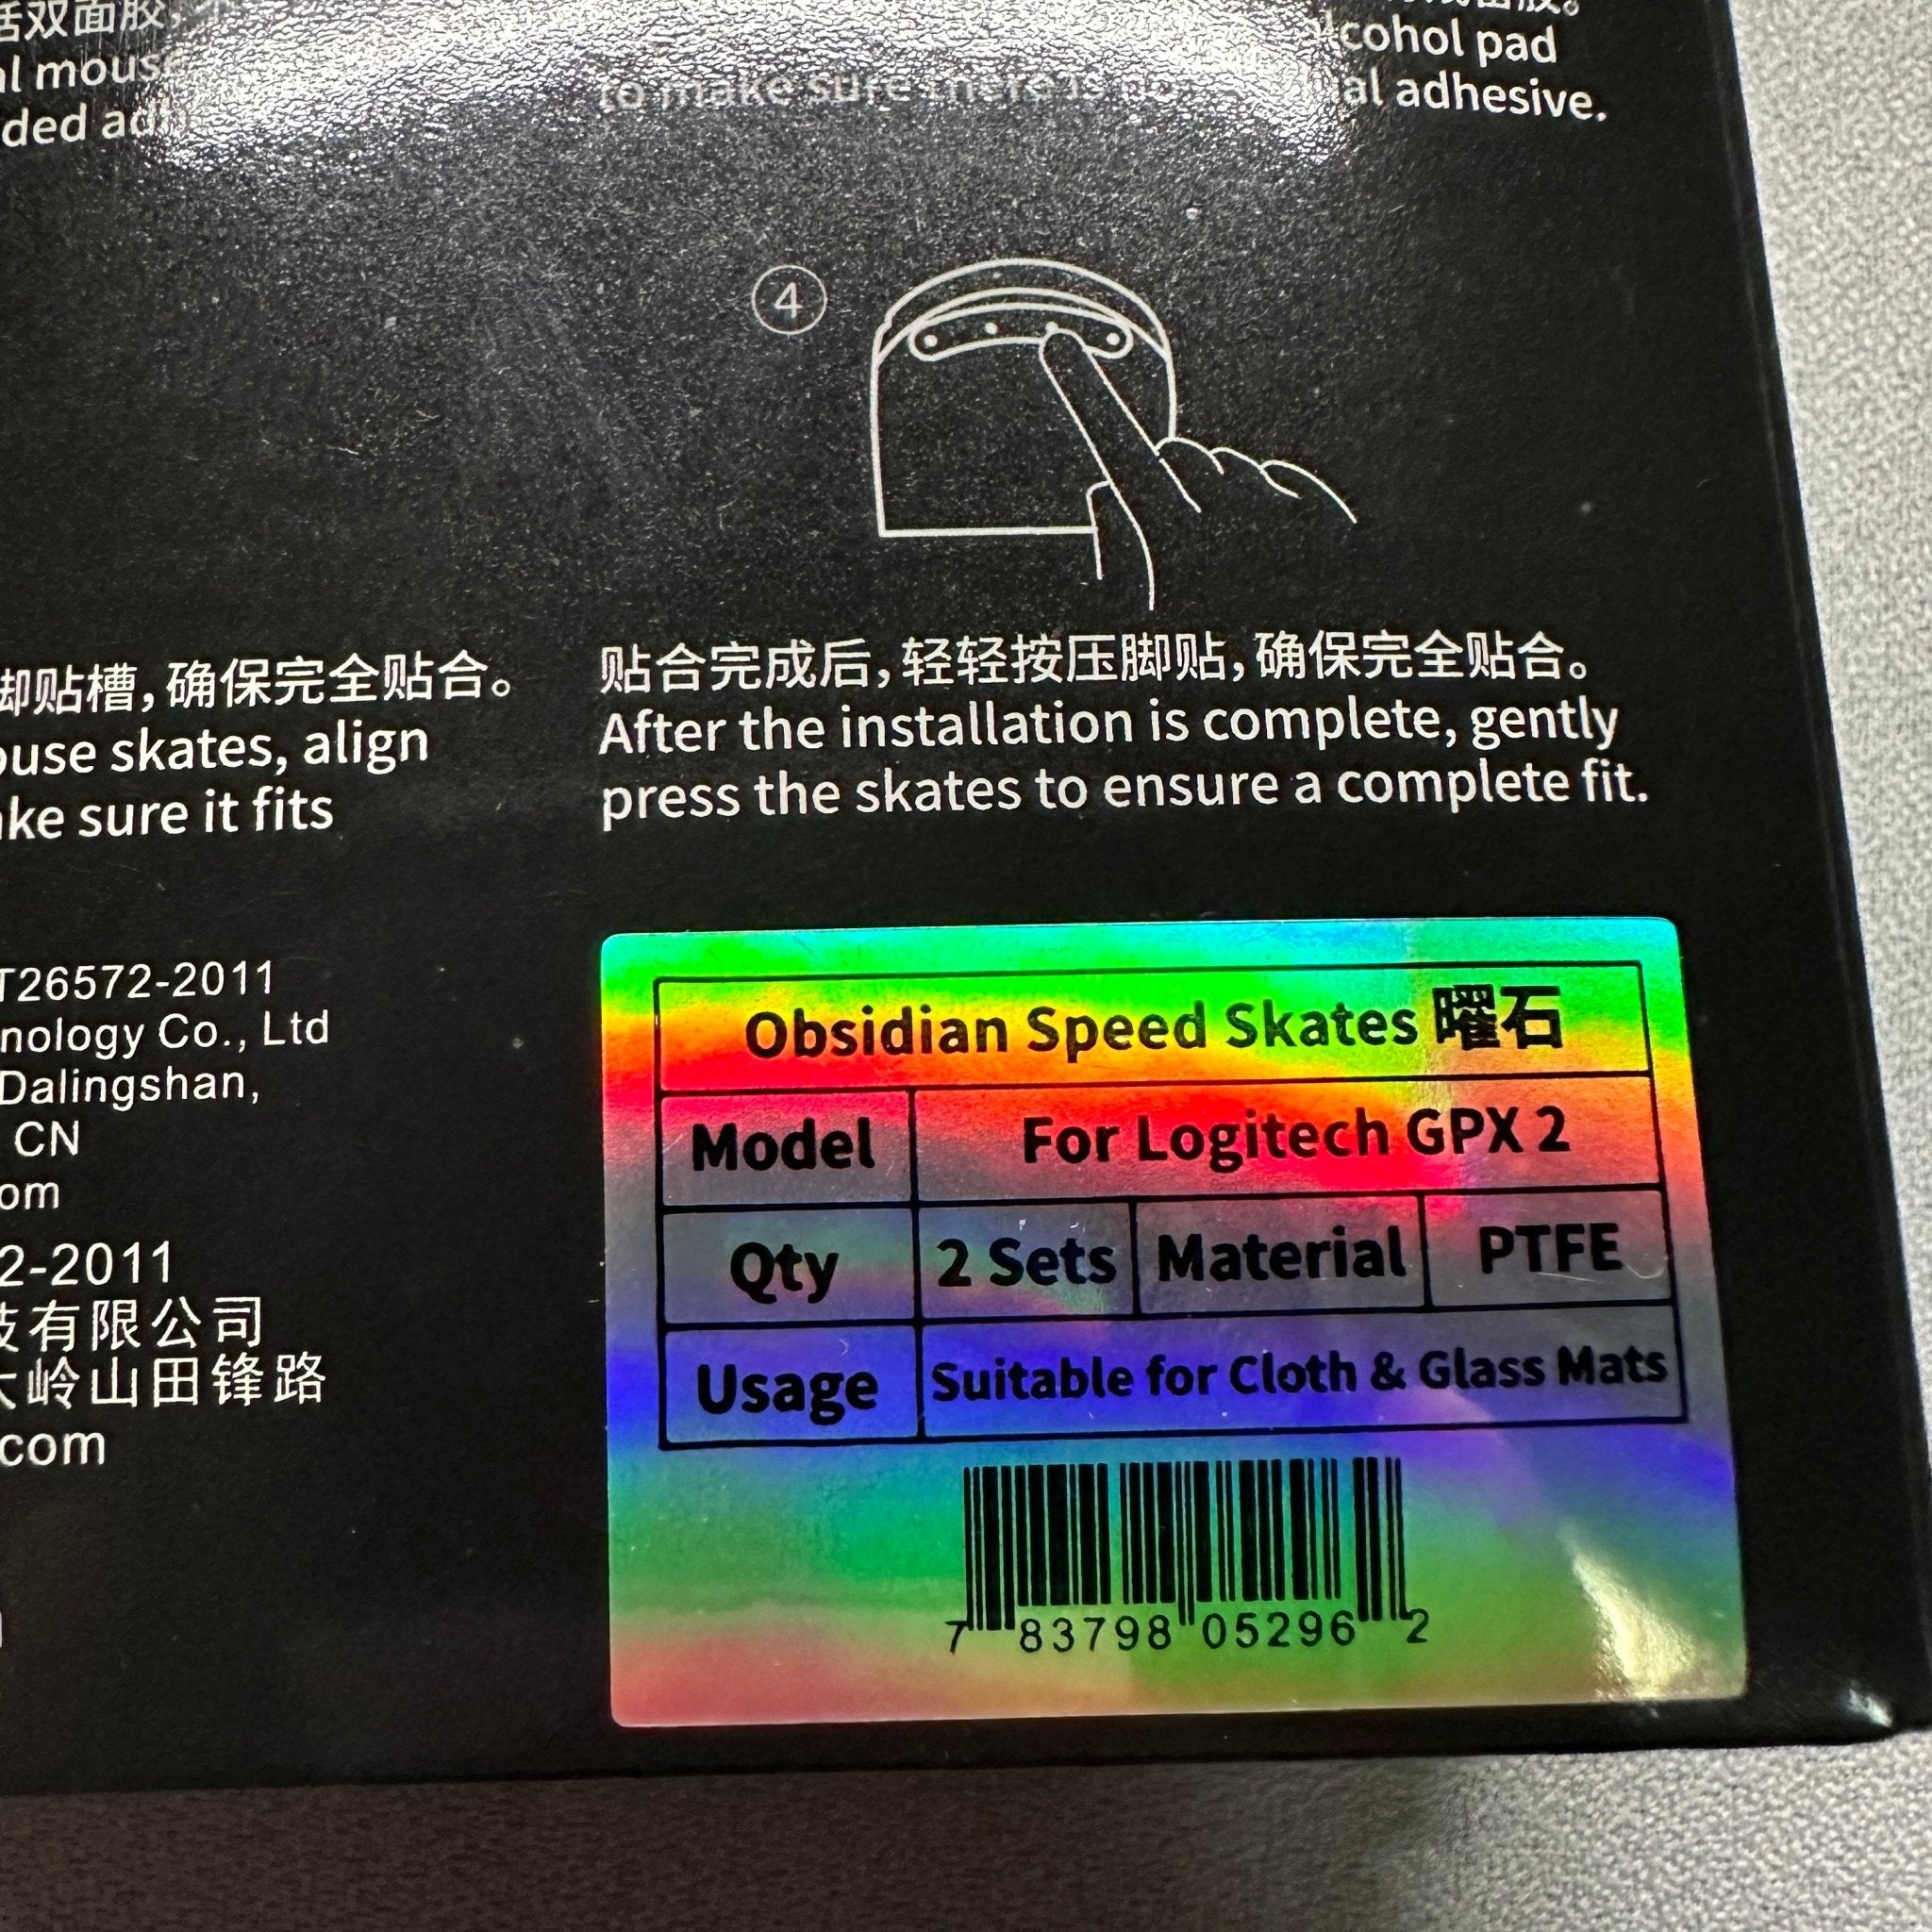 【日本未発売】X-raypad G Pro X Superlight 2用 朱色 0.8mm Obsidian Mouse Skate コントロール マウスソール - デバセレ！Devices for FPS